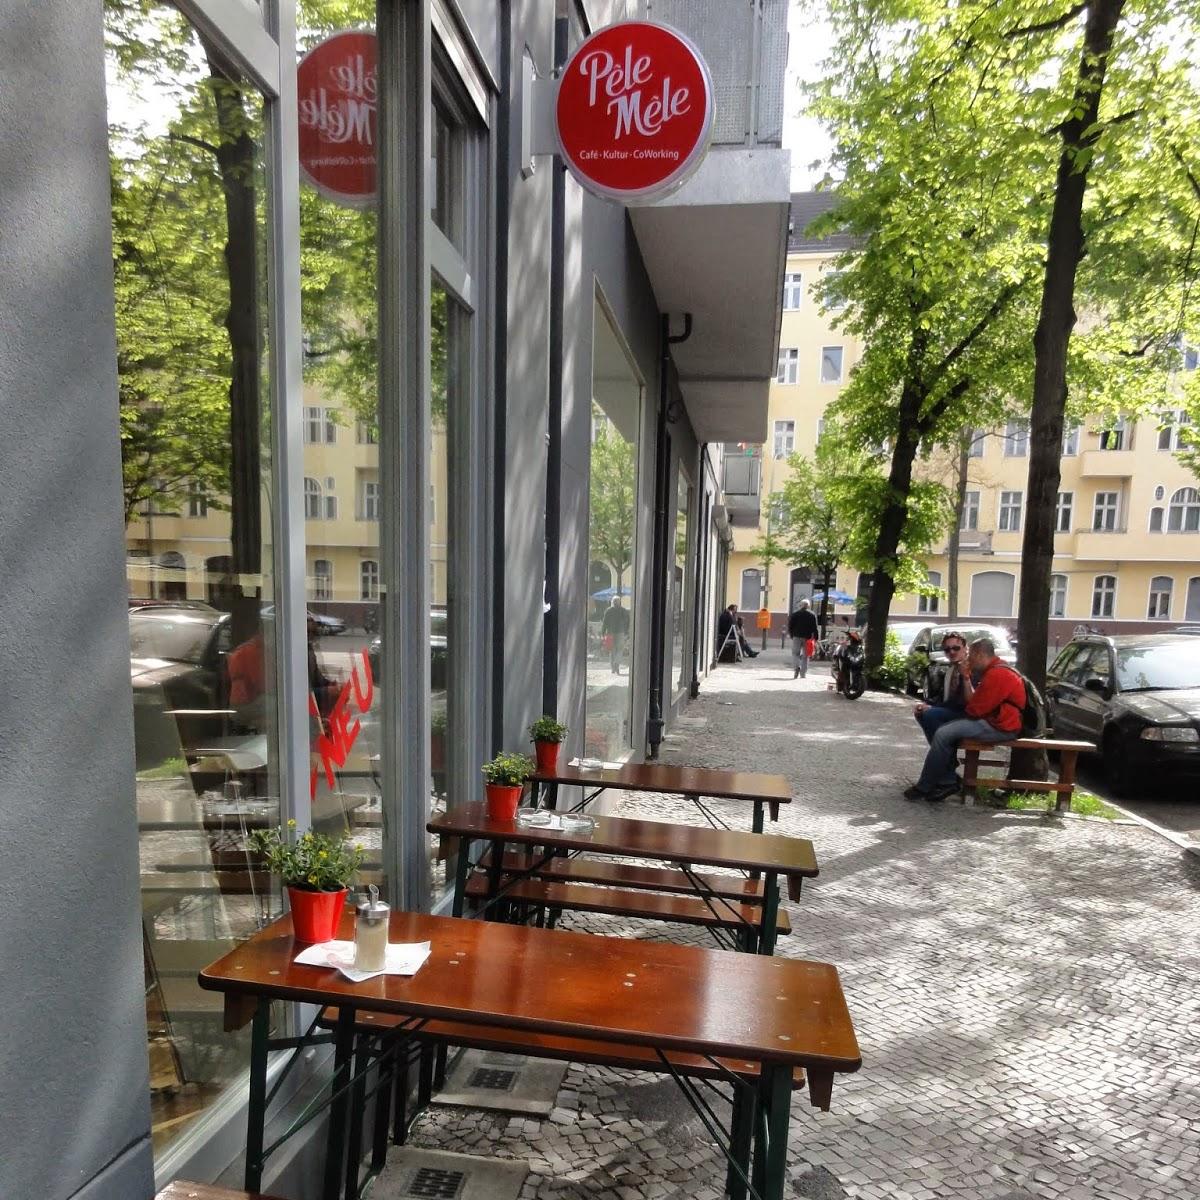 Restaurant "Pêle-Mêle" in Berlin